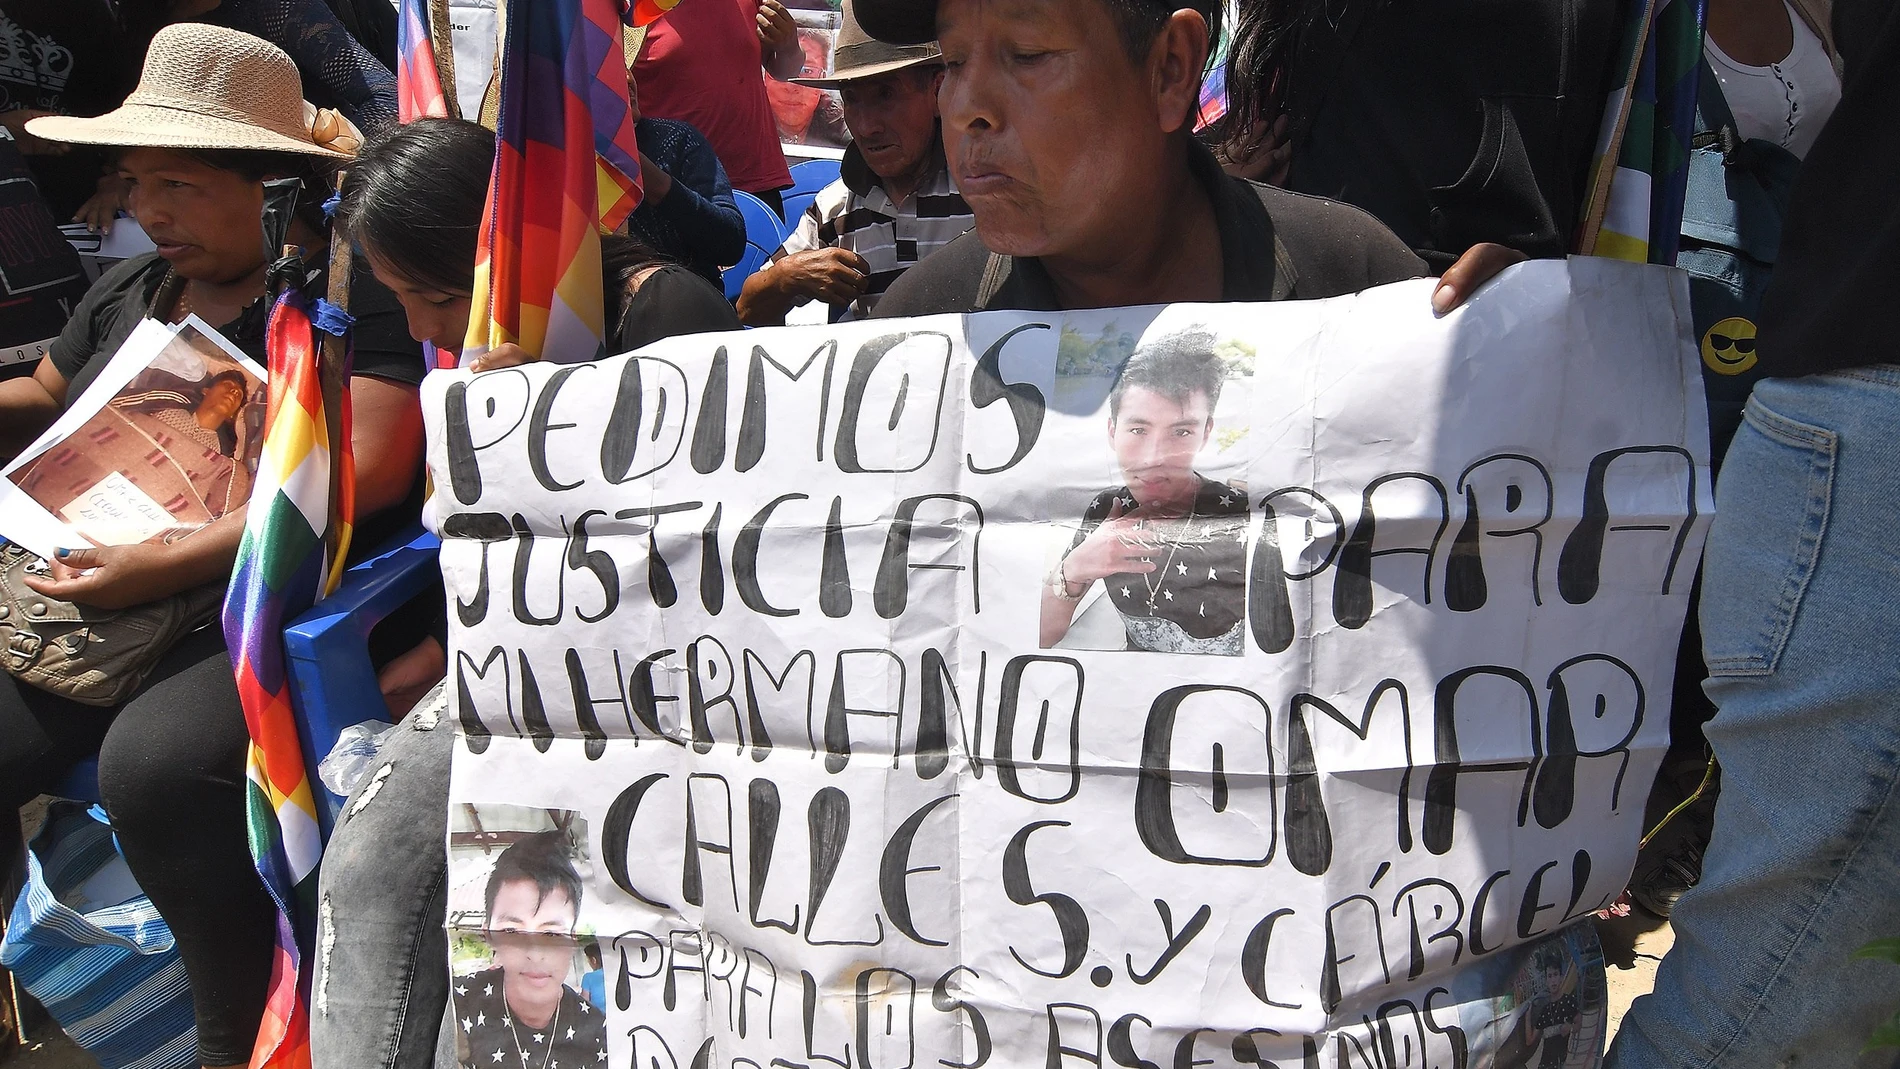 AME8406. SACABA (BOLIVIA), 15/11/2020.- Familiares y amigos de las víctimas participan hoy en un memorial a los diez civiles fallecidos por disparos policiales y militares, en Sacaba (Bolivia). Una multitud se congregó este domingo en la ciudad boliviana de Sacaba para pedir "justicia" y las sanciones a los responsables por la muerte de una decena de civiles durante una operación policial y militar hace un año. Miles de personas marcharon hasta llegar al sitio llamado Huayllani en Sacaba donde hace un año un operativo de las fuerzas conjuntas de seguridad cobró la vida de diez personas que eran parte de una manifestación contraria al Gobierno de la entonces presidenta interina Jeanine Áñez. EFE/Jorge Ábrego